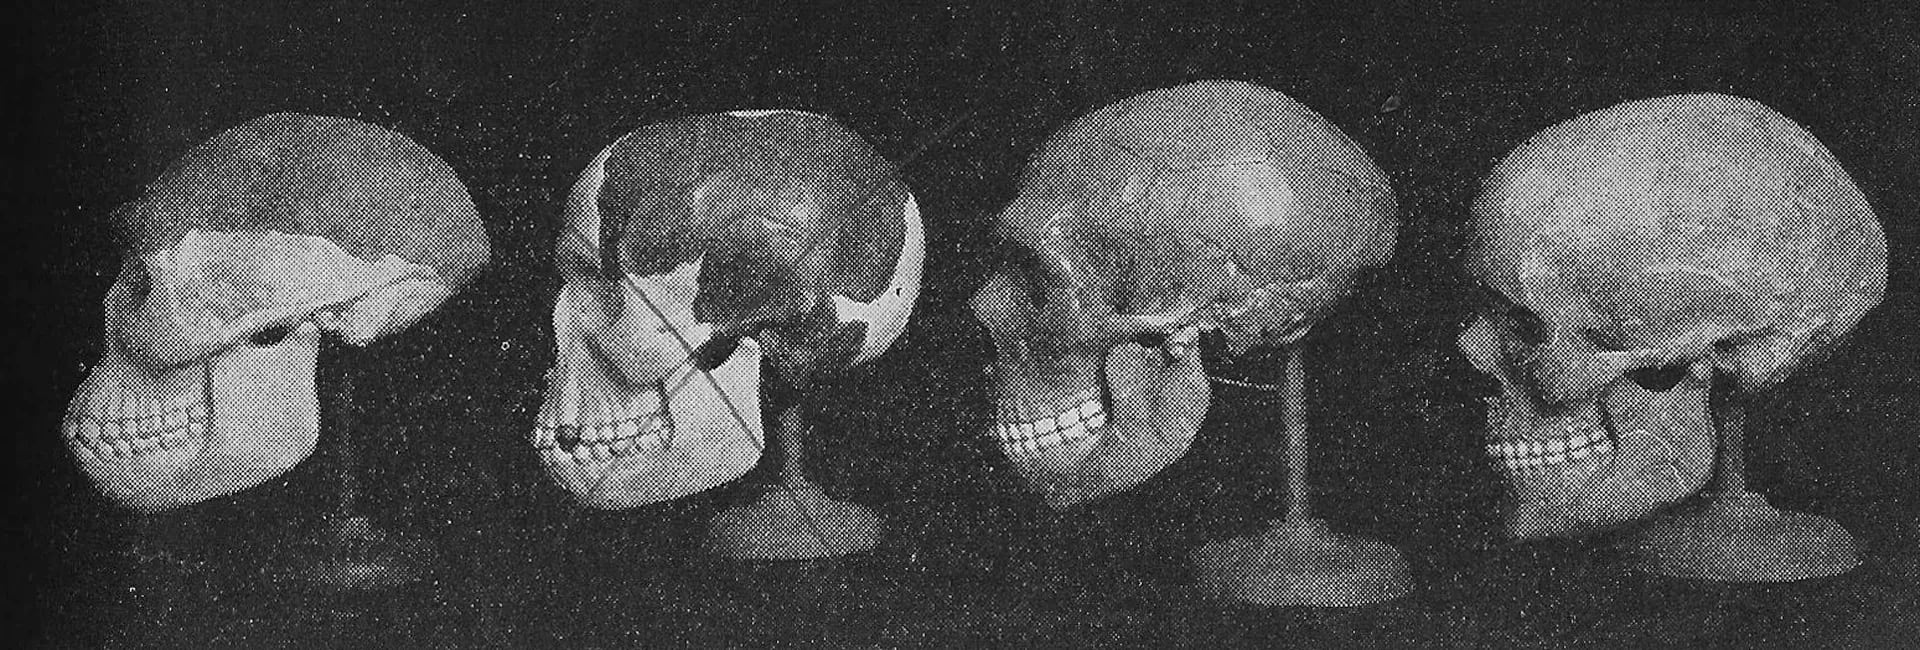 Los cuatro hombres originarios: el hombre de Java, Piltdown -tachado-, neanderthal y el hombre de Cromañón en la edición de 1952 del libro “Elementos de la Biología”. Un año después, el fraude quedaba desarticulado